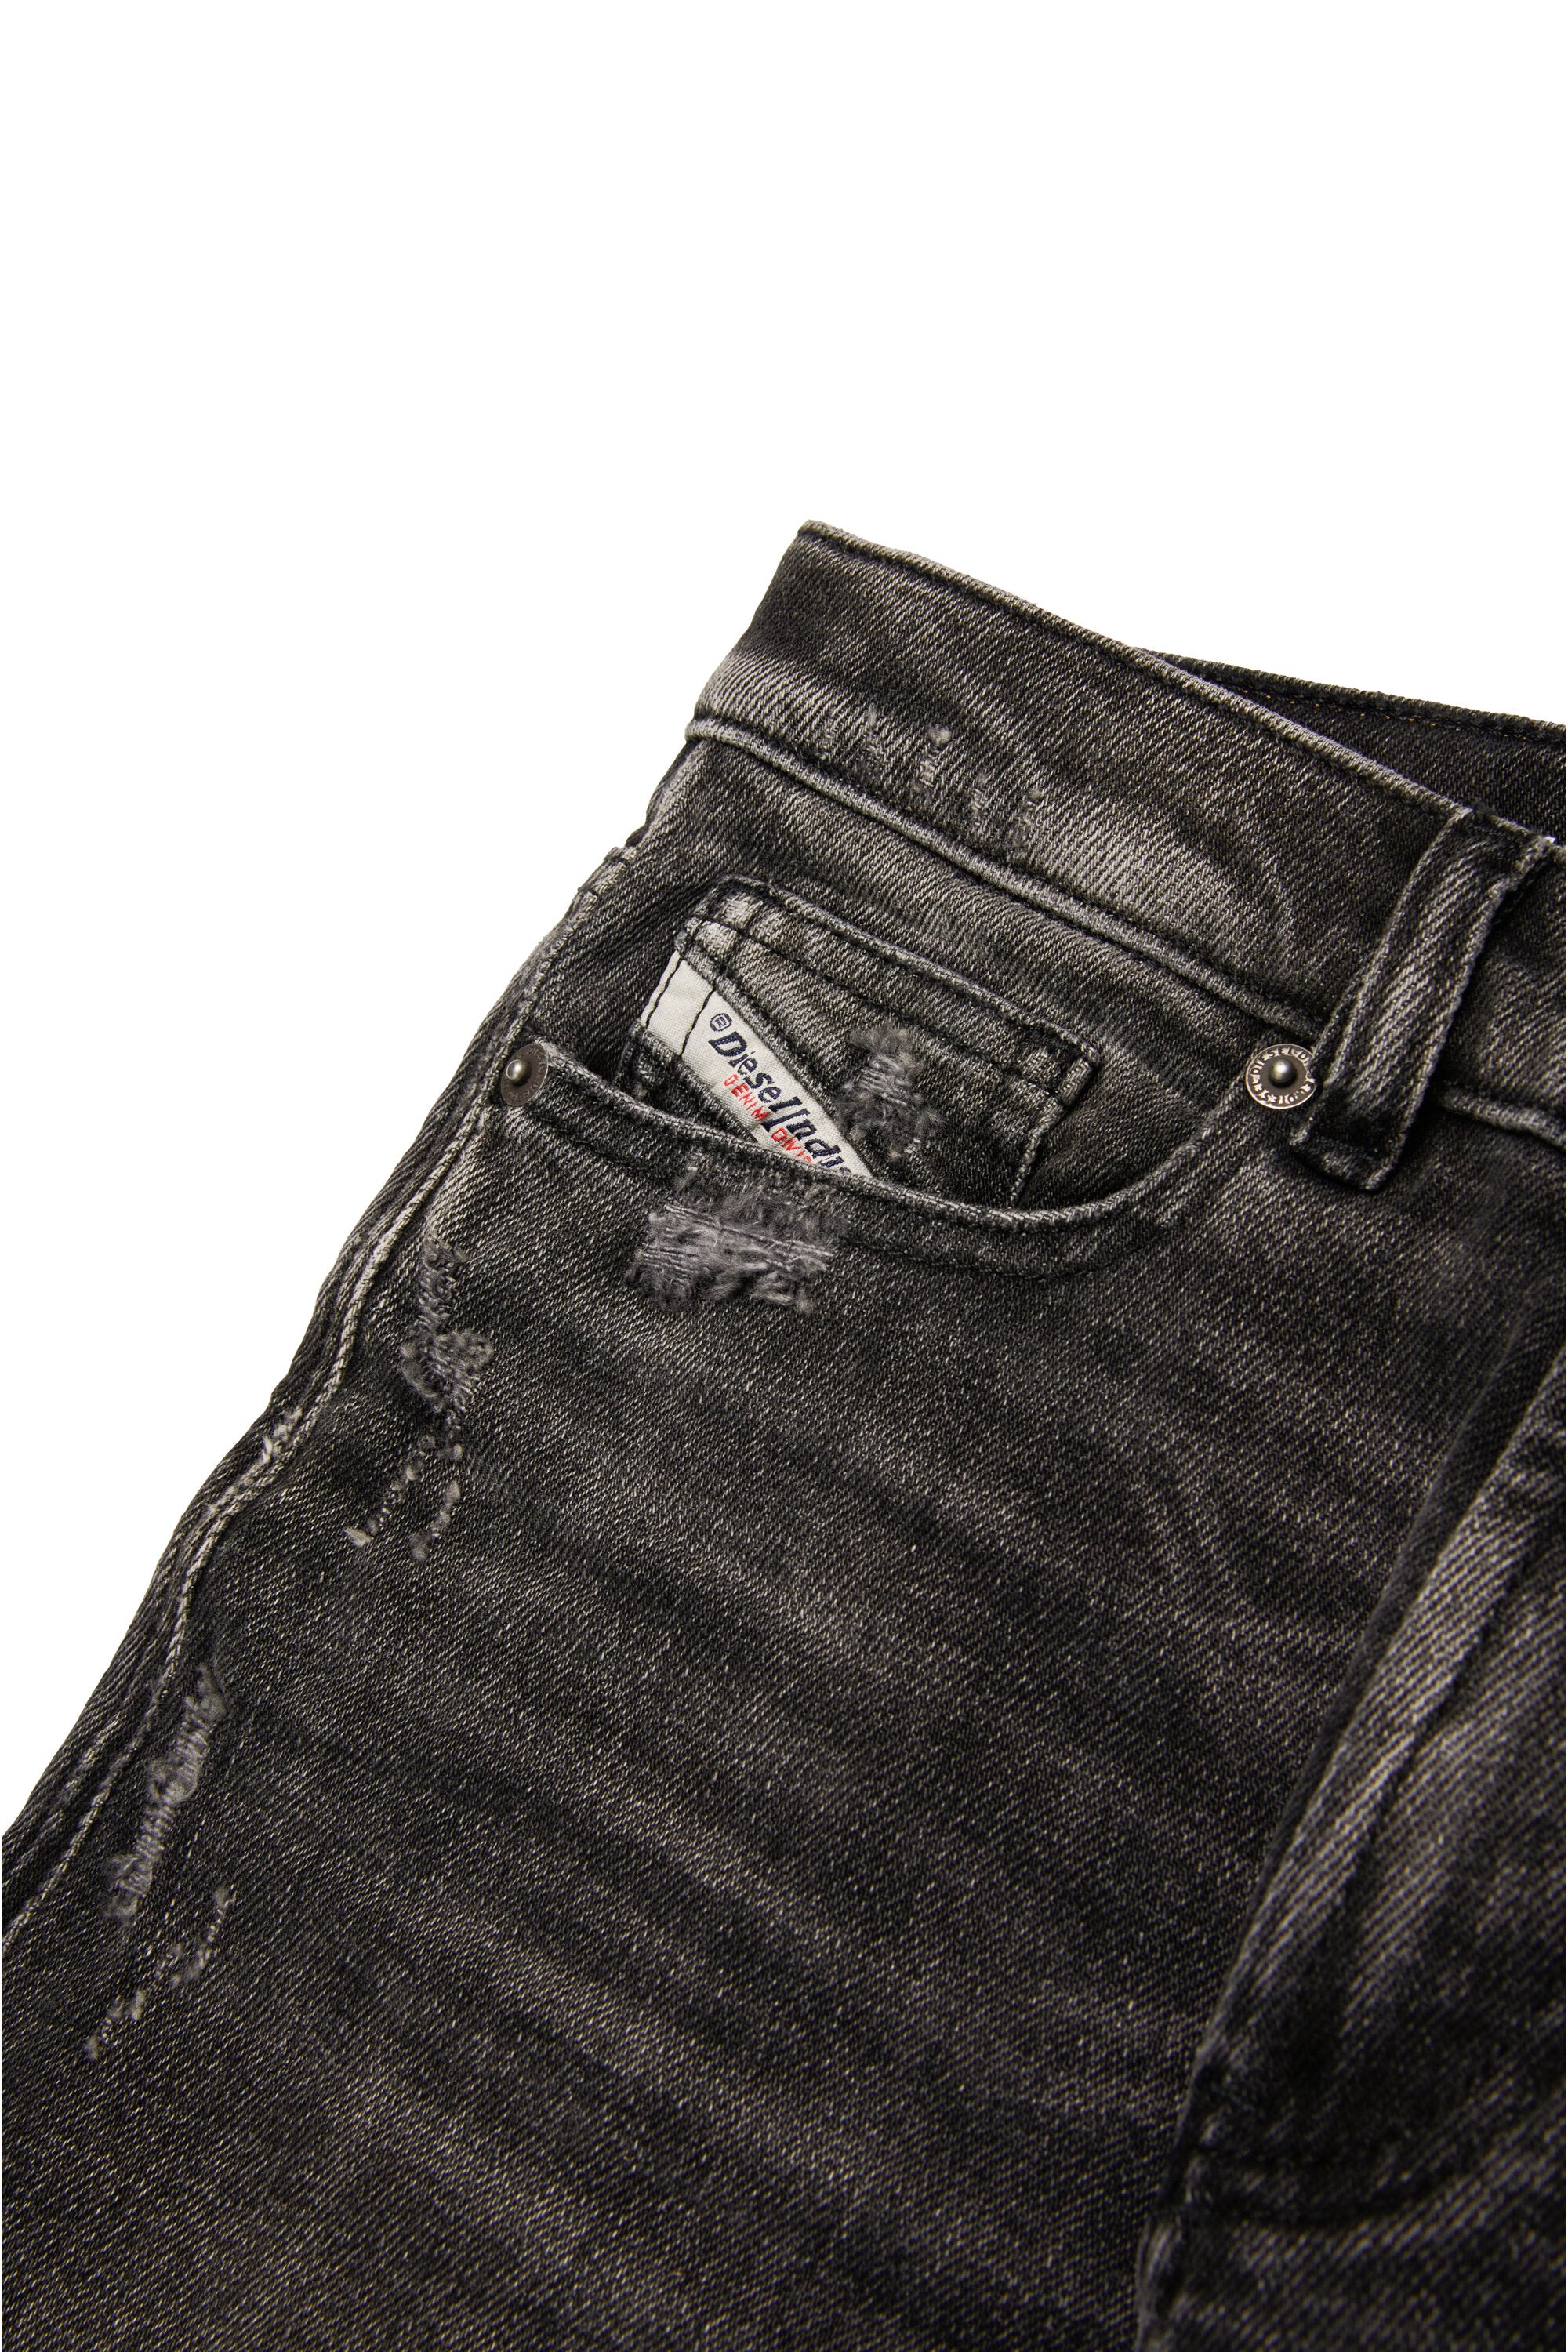 Jeans straight nero con abrasioni - 2010